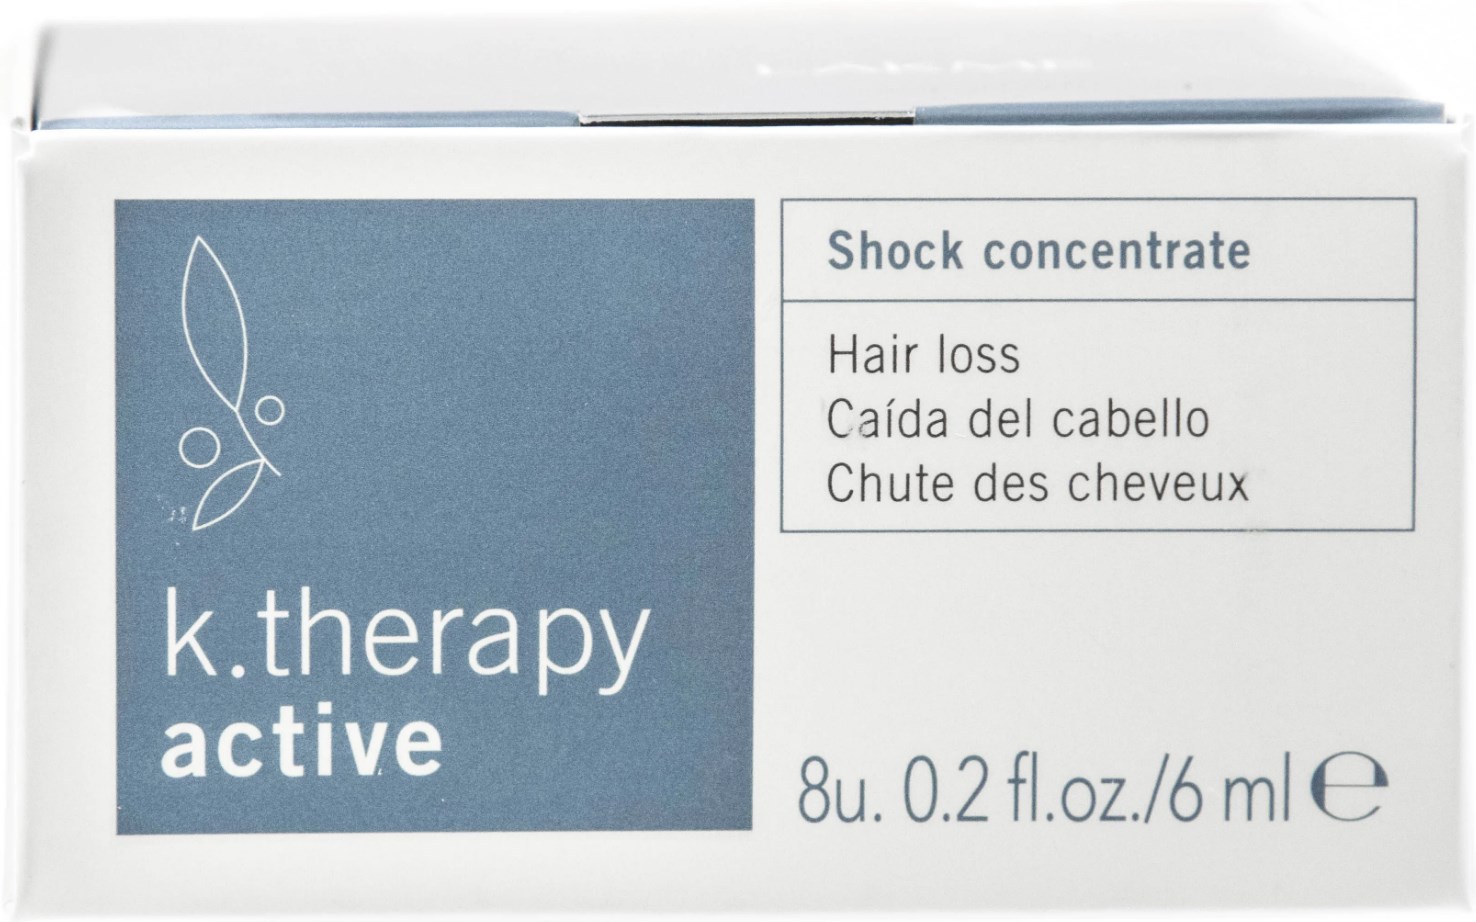 Концентрат интенсивного действия Lakme K.Therapy Active Shock Concentrate, против выпадения волос, 8 шт. х 6 мл - фото 4